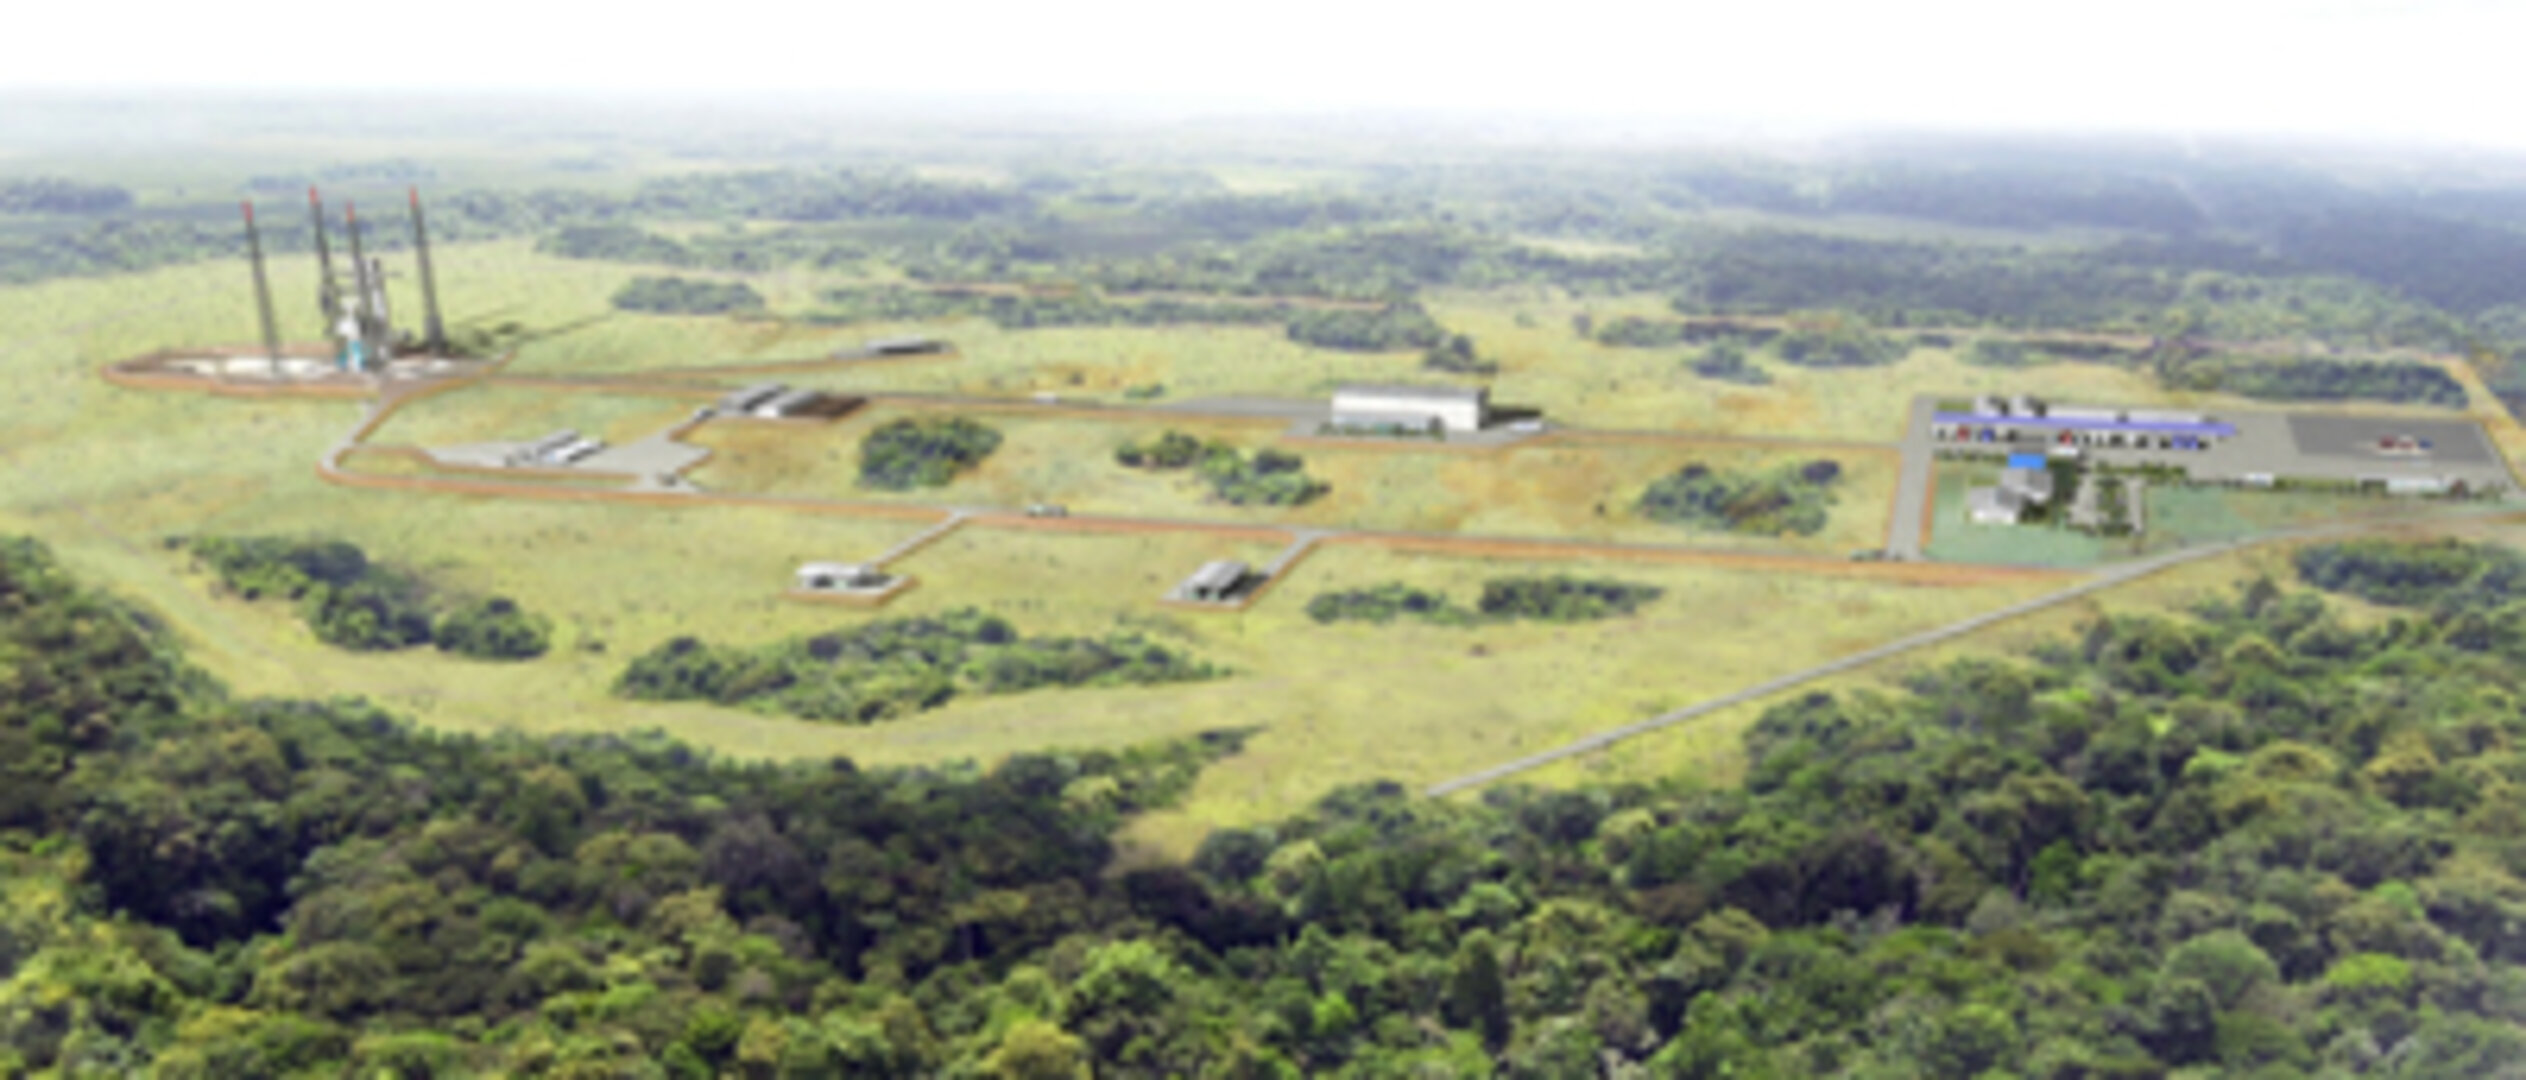 Im Dschungel von Guyana entsteht der Startkomplex für die Sojus-Rakete